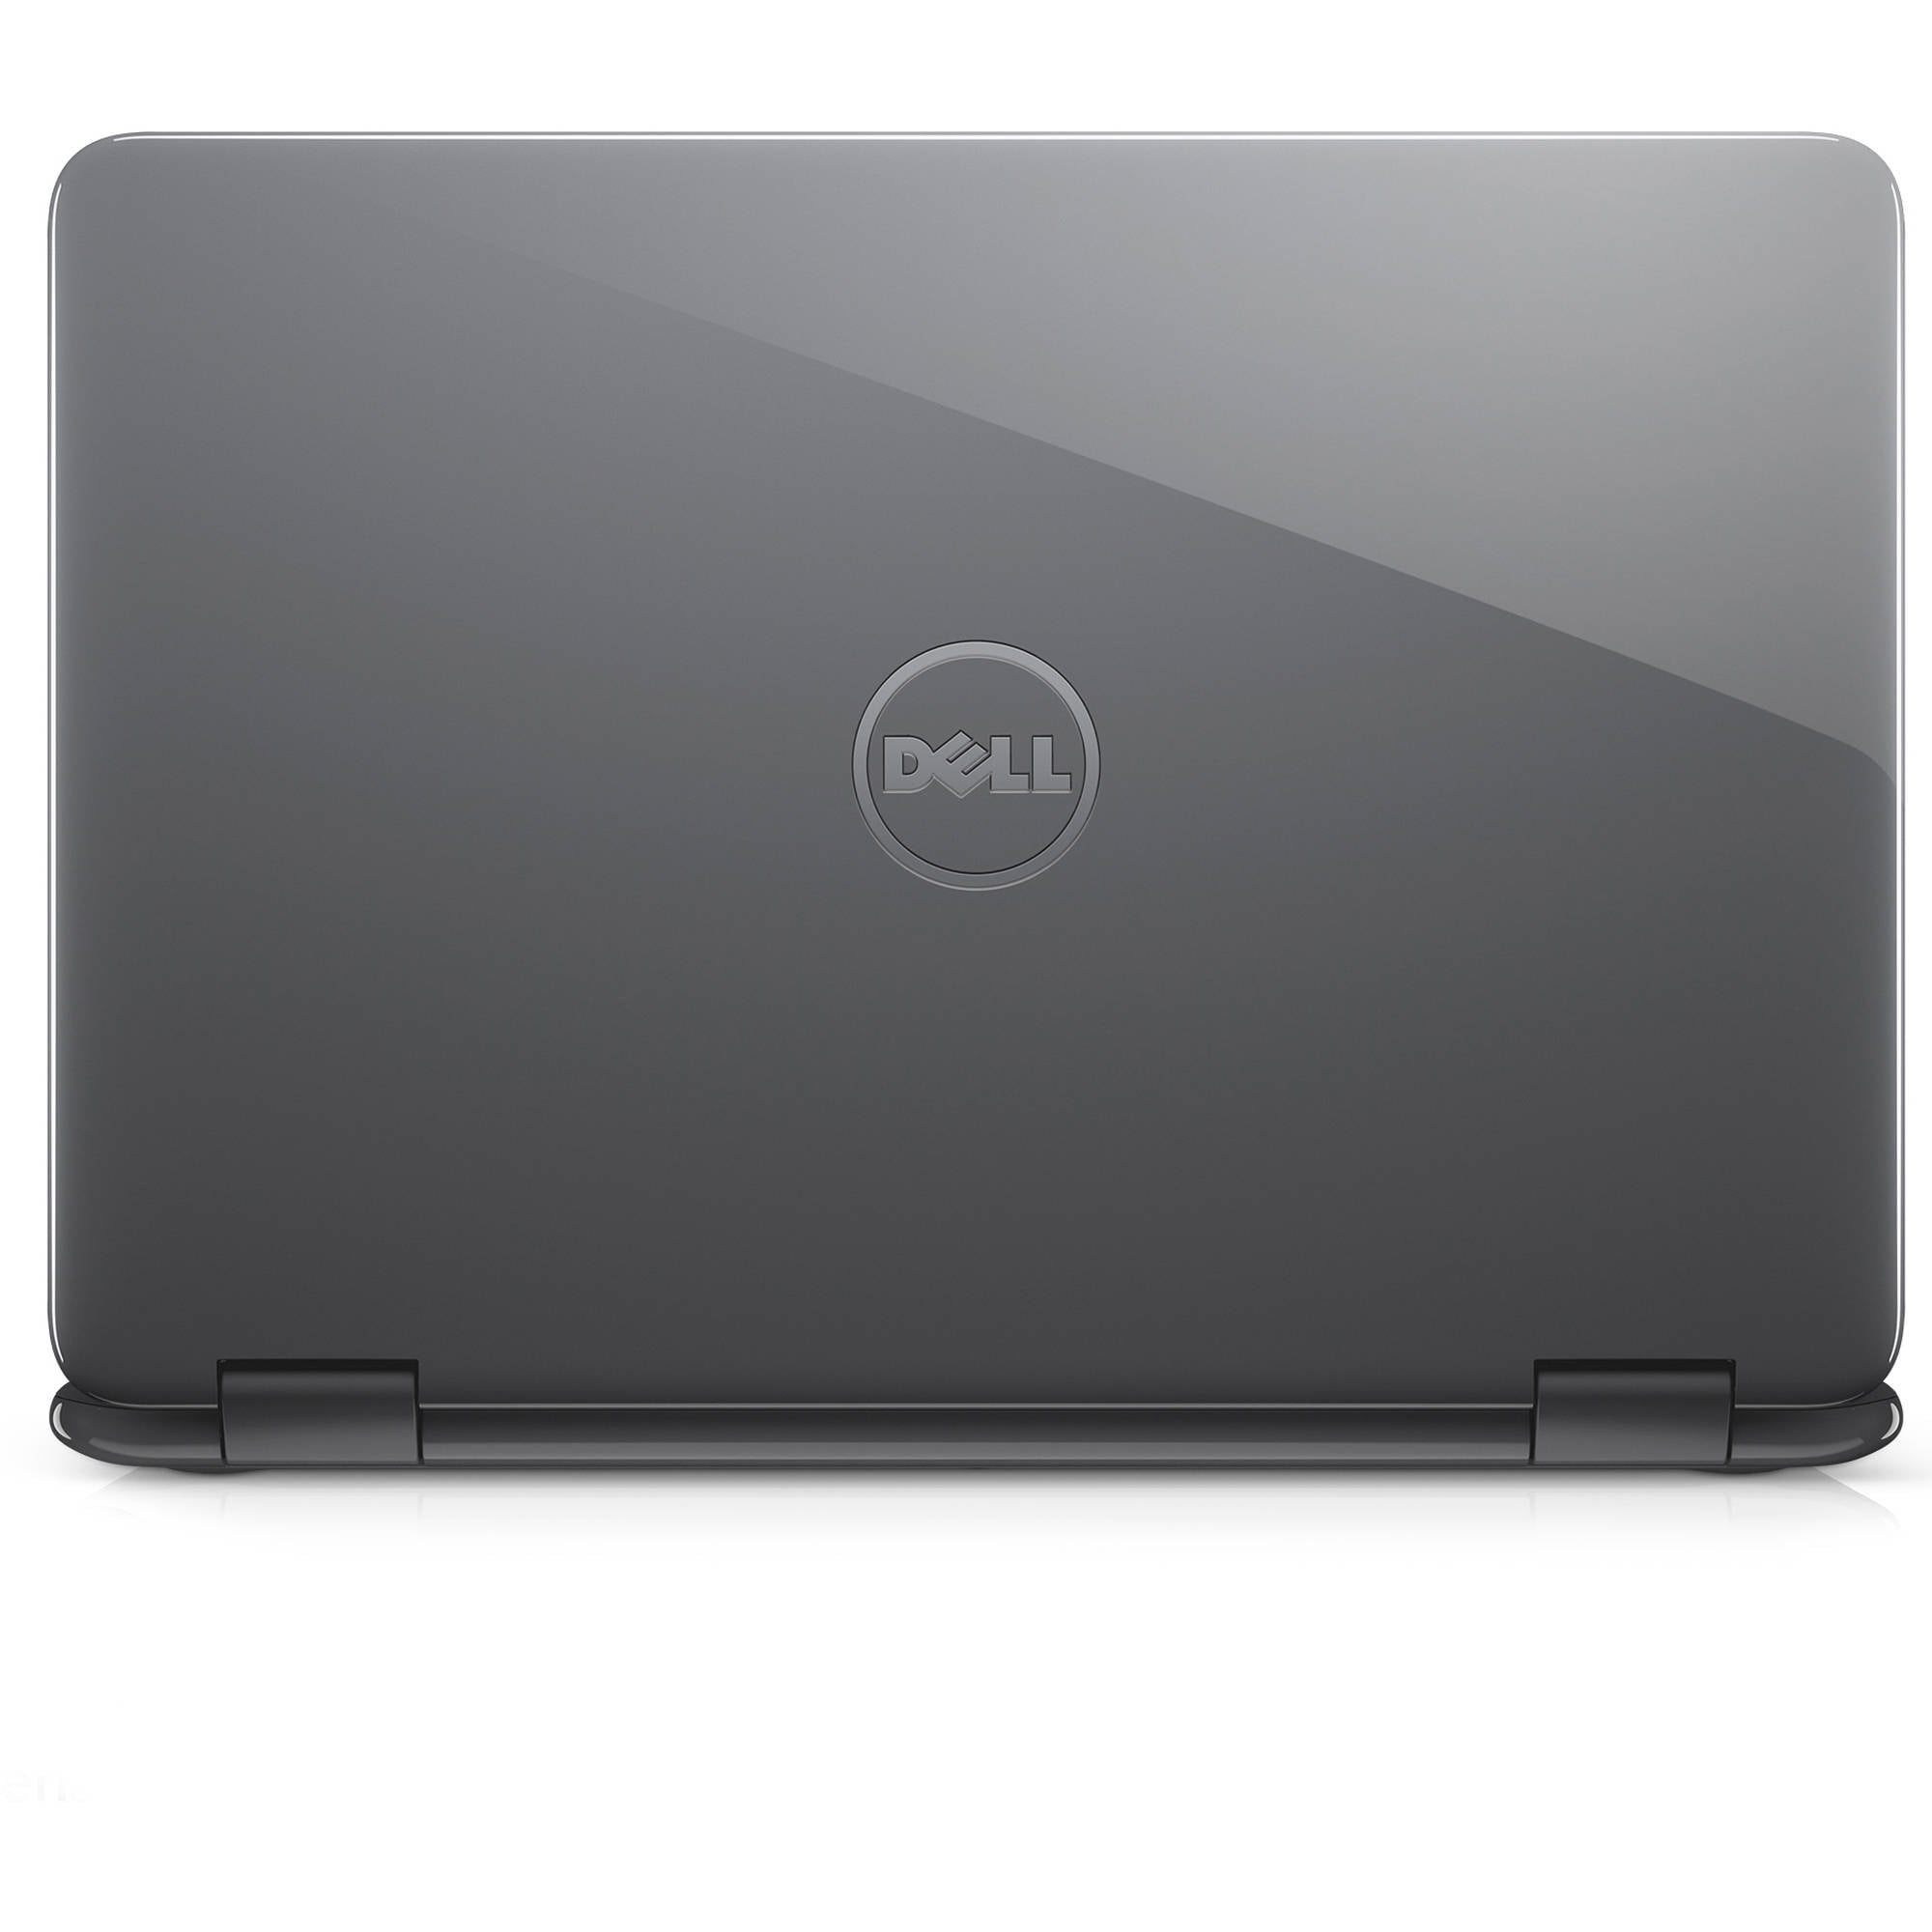 Dell Inspiron 11 3168: Bạn đang tìm kiếm một chiếc laptop với giá cả phải chăng, nhưng lại đầy đủ tính năng và thiết kế đẹp mắt? Dell Inspiron 11 3168 chính là chiếc laptop mà bạn đang tìm kiếm! Với màn hình cảm ứng đa năng, hiệu năng ổn định và thiết kế nhỏ gọn, chiếc laptop này sẽ làm hài lòng mọi nhu cầu của bạn. 